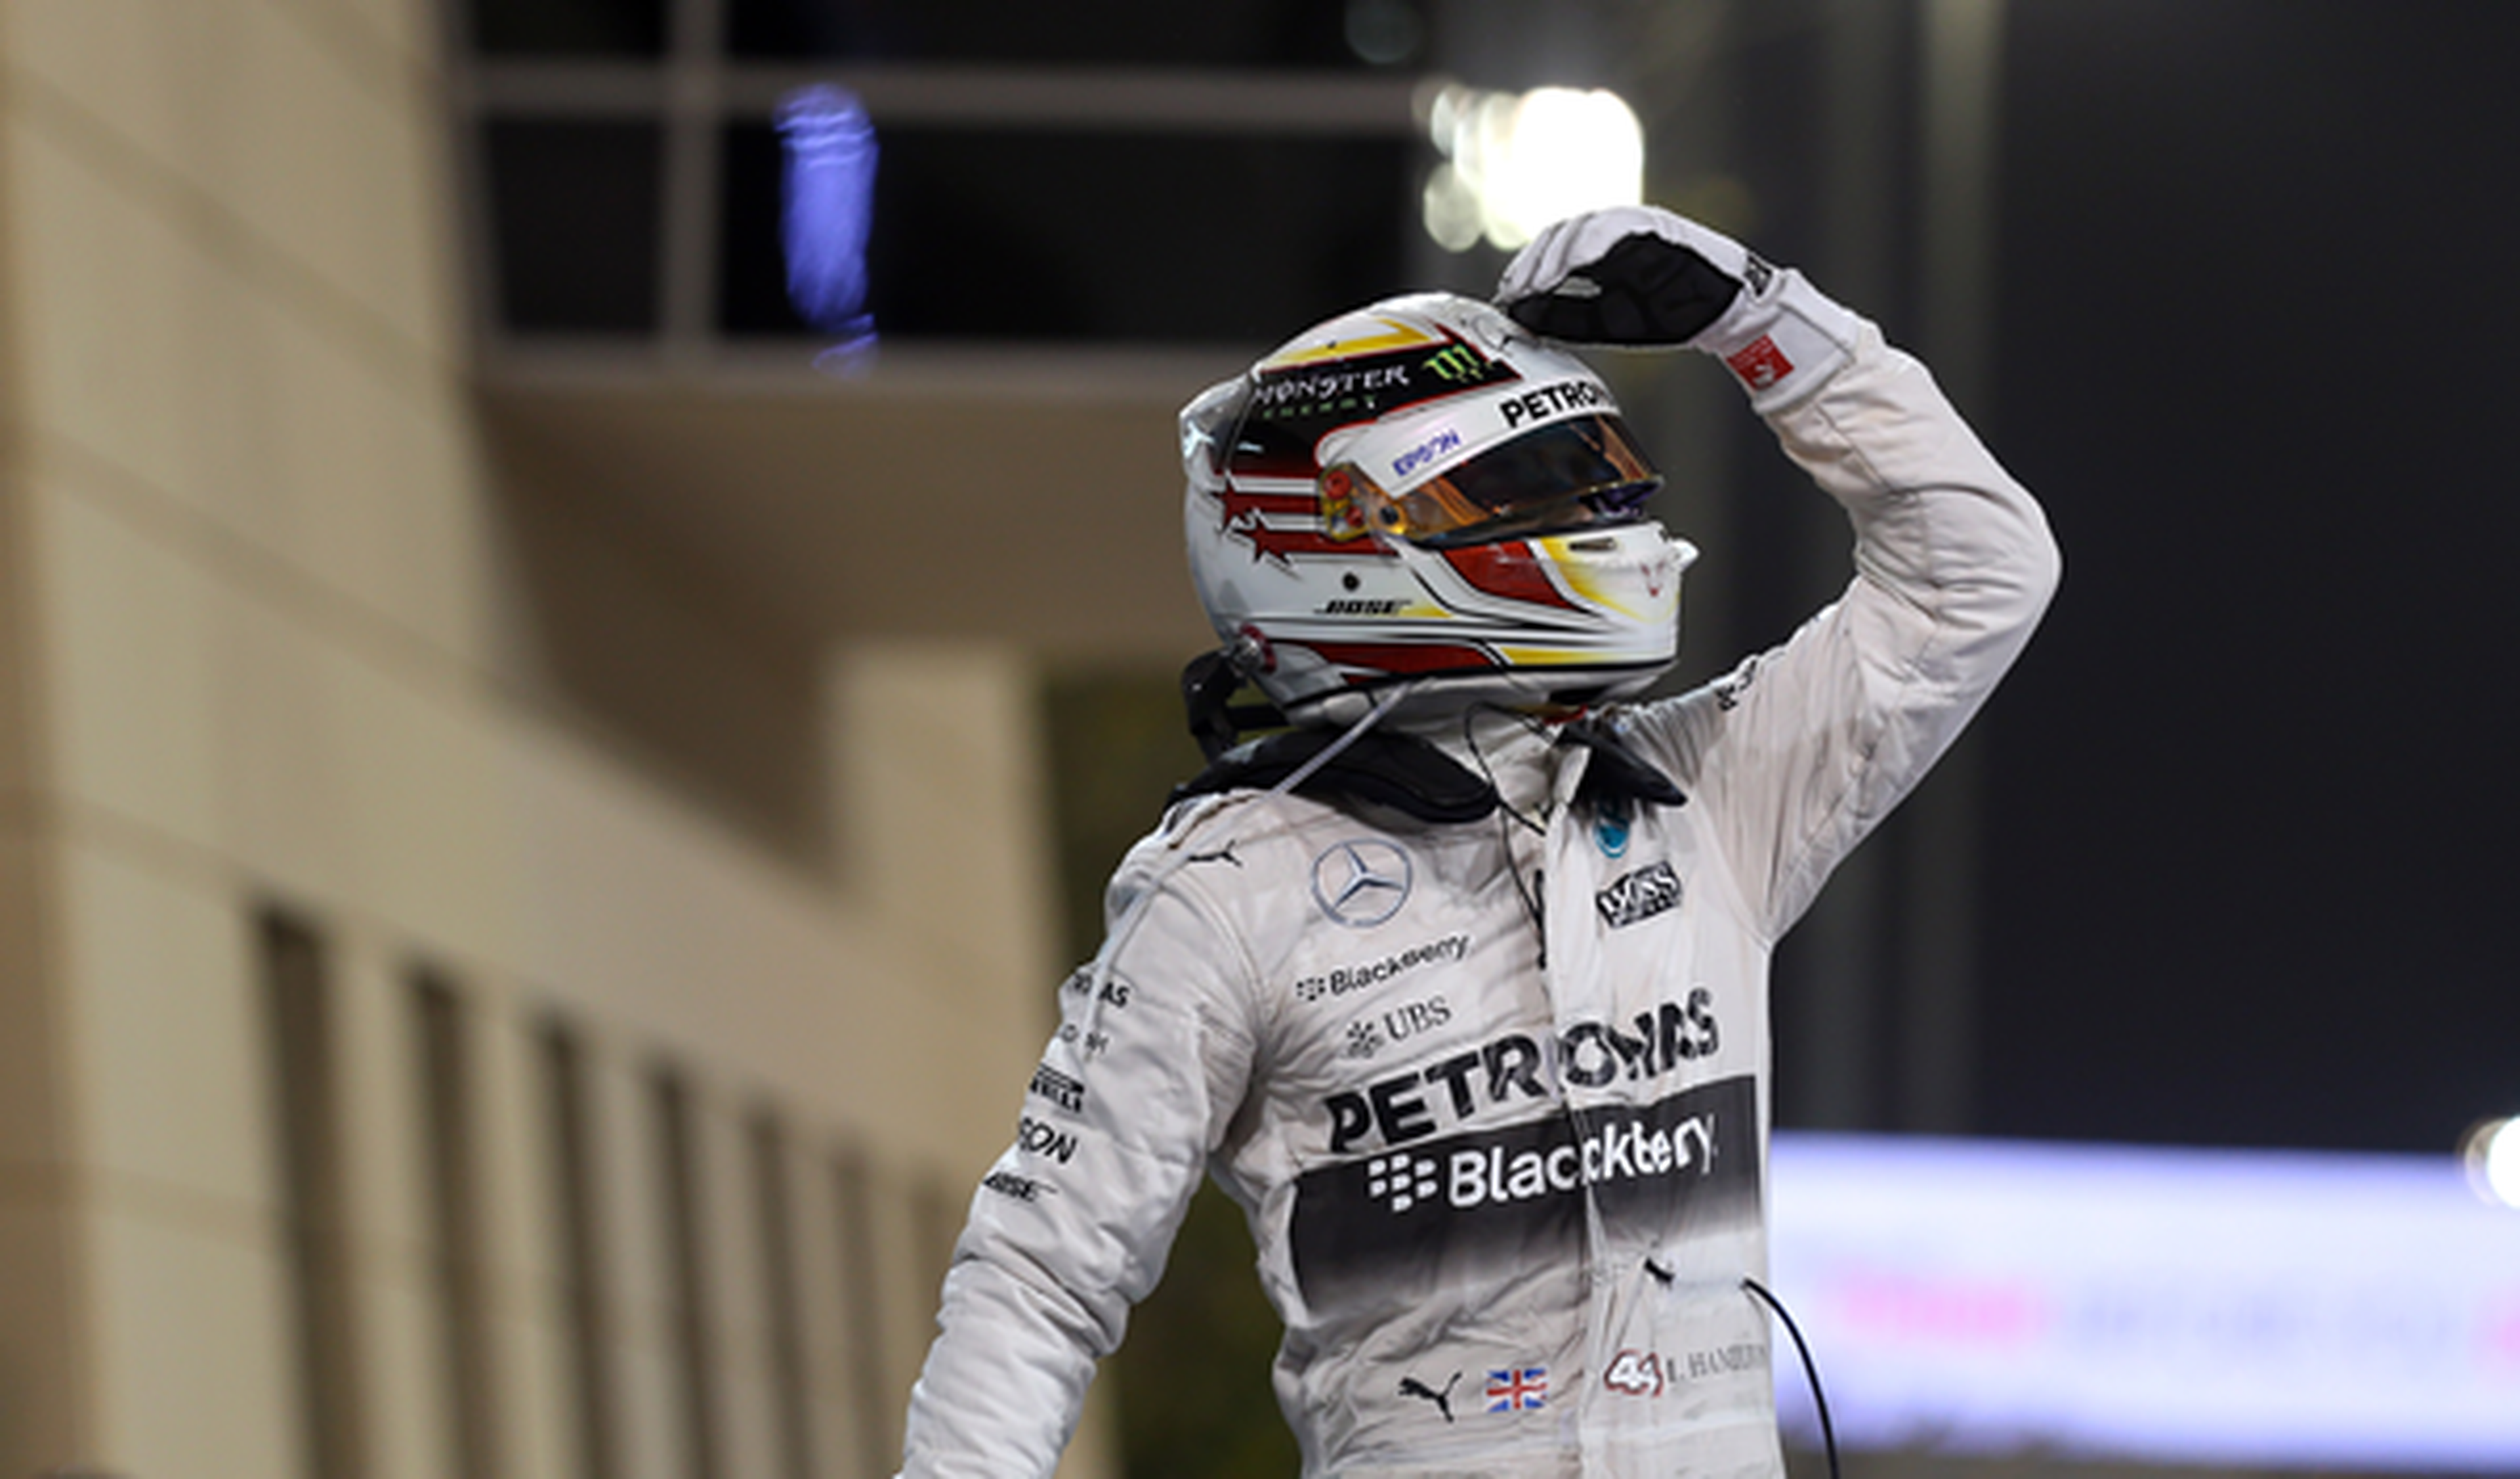 Victoria de Lewis Hamilton en el GP de Bahréin